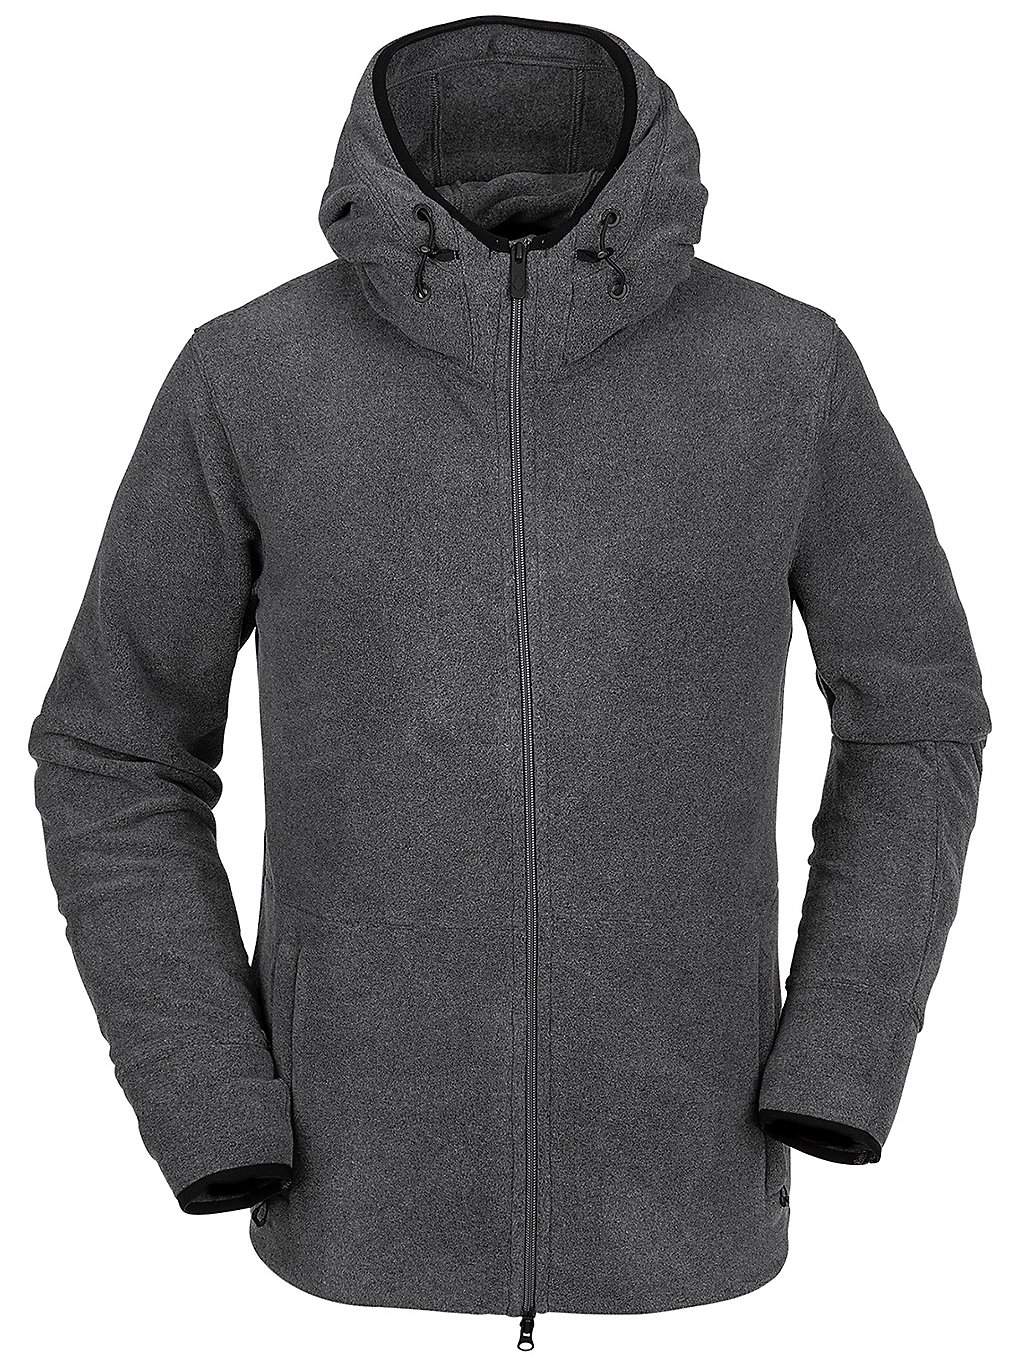 Volcom polartec zip hoodie harmaa, volcom